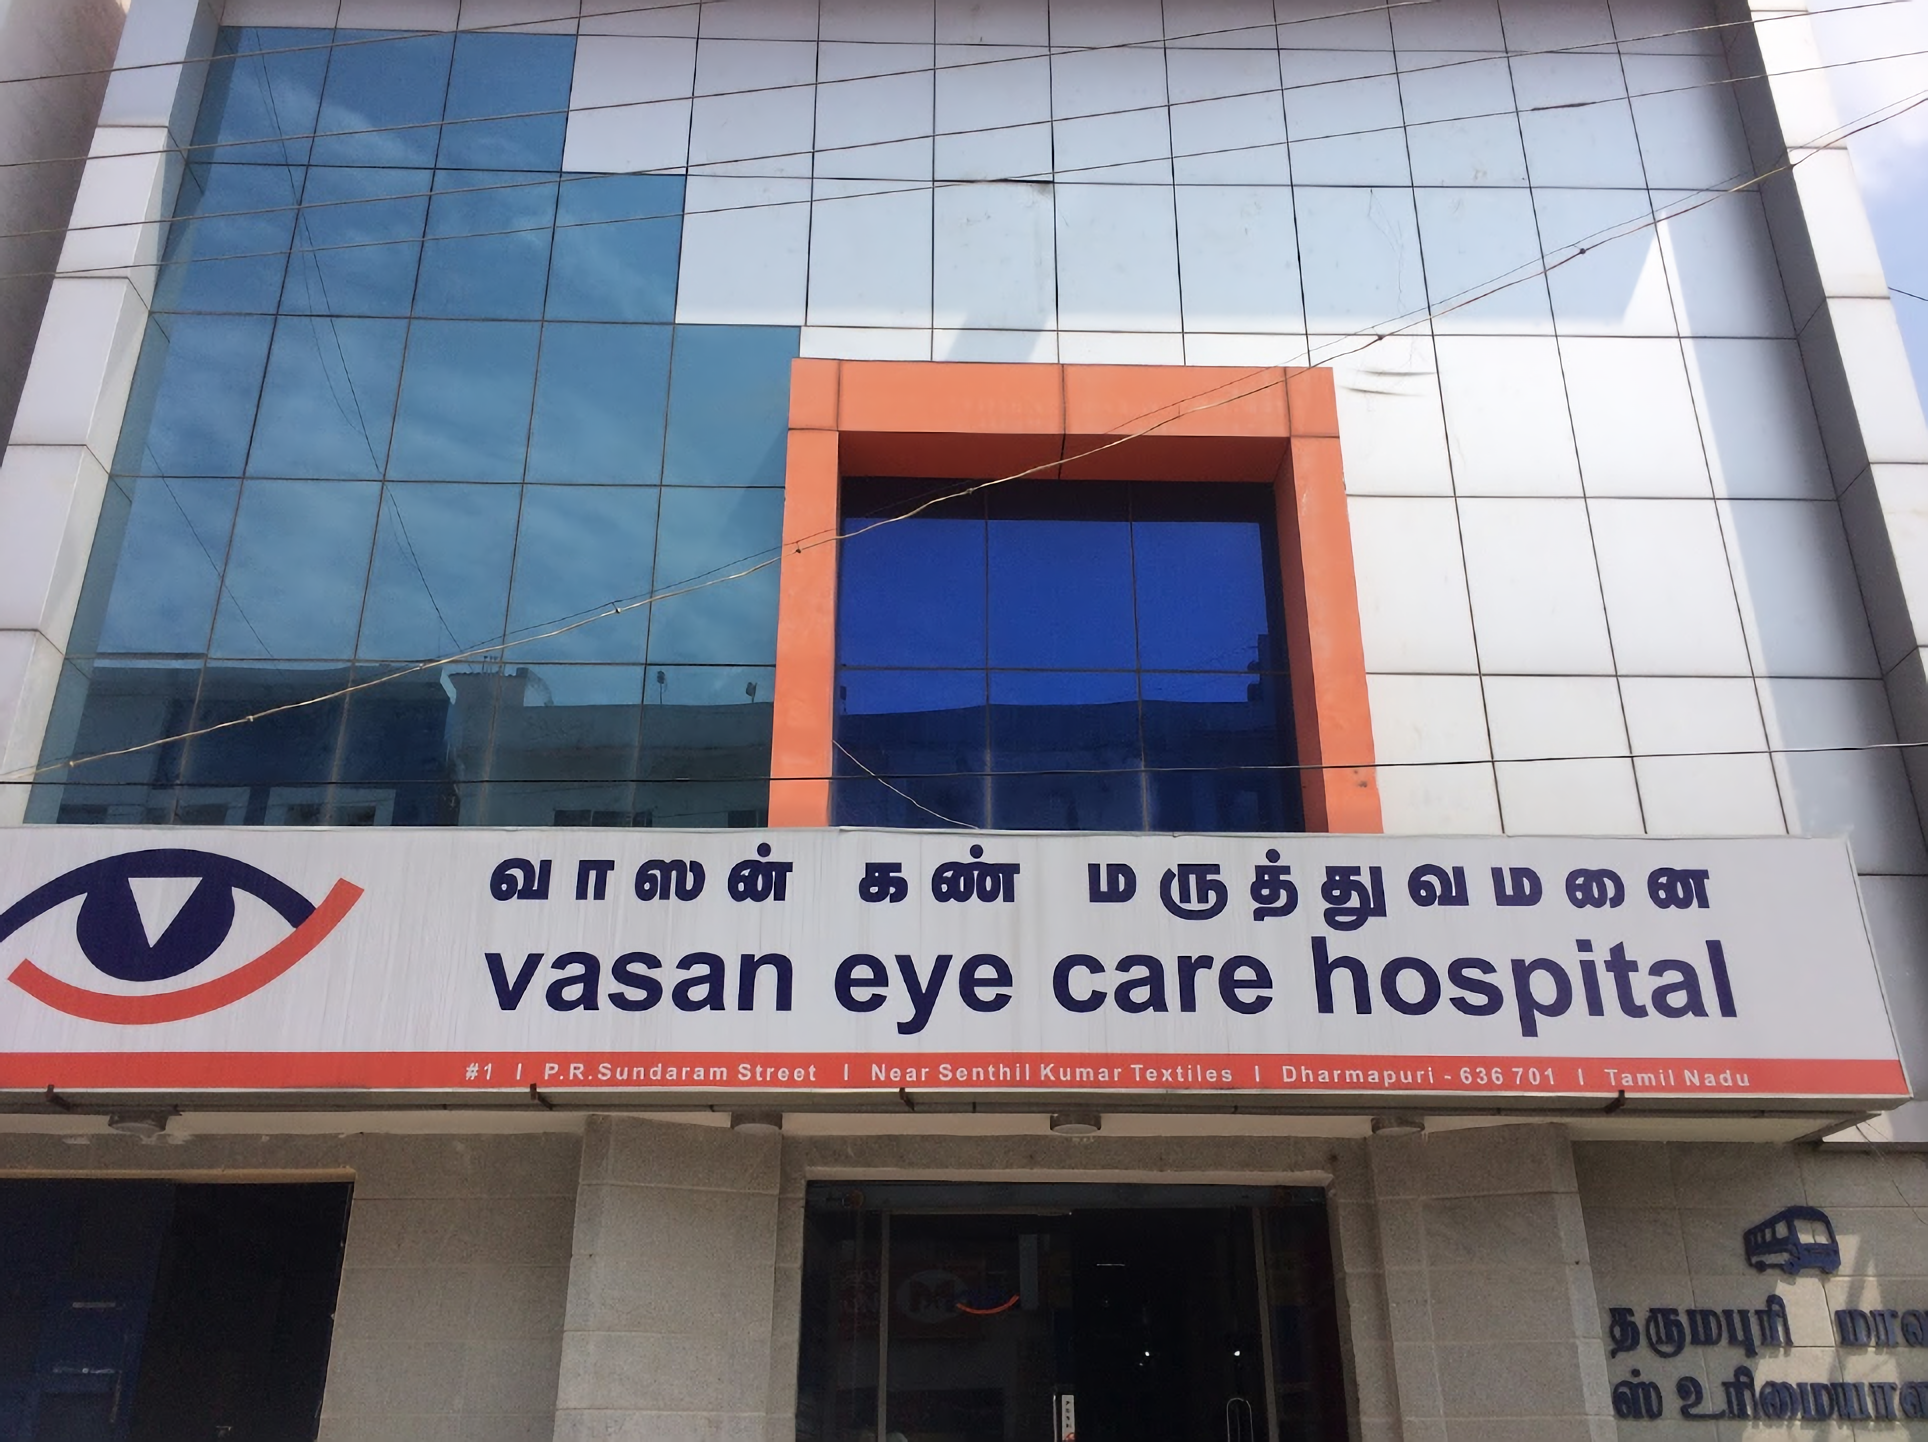 Vasan Eye Care Hospital Dharmapuri P. R. Sundaram Street